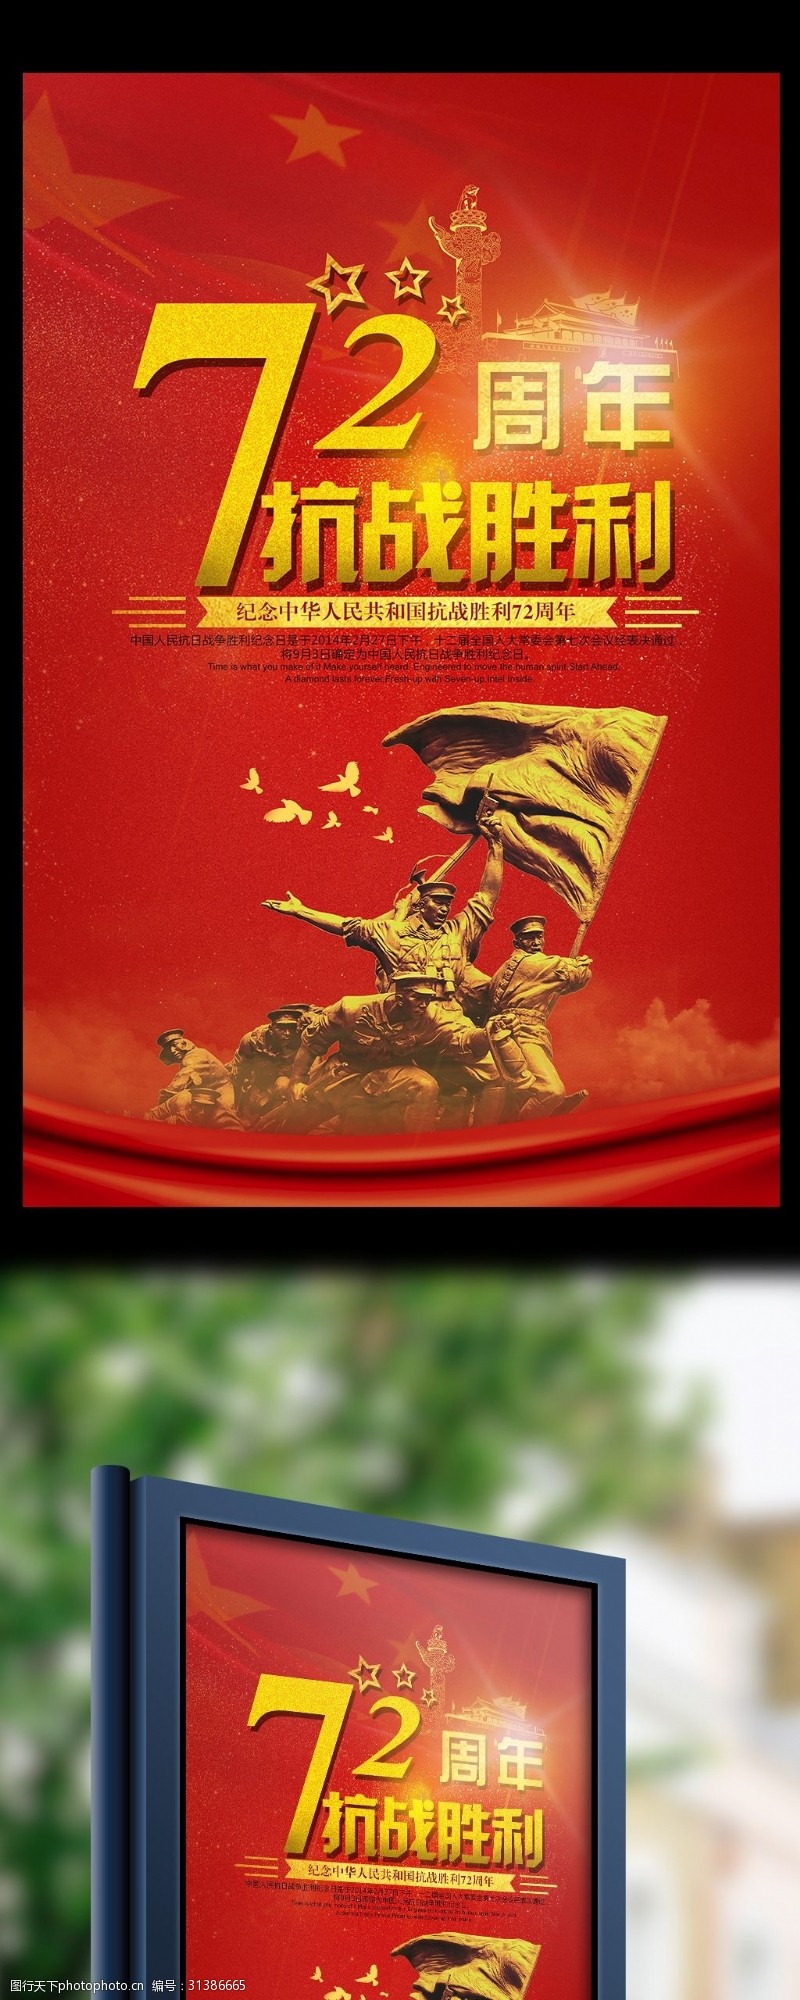 革命烈士抗战胜利72周年宣传海报设计